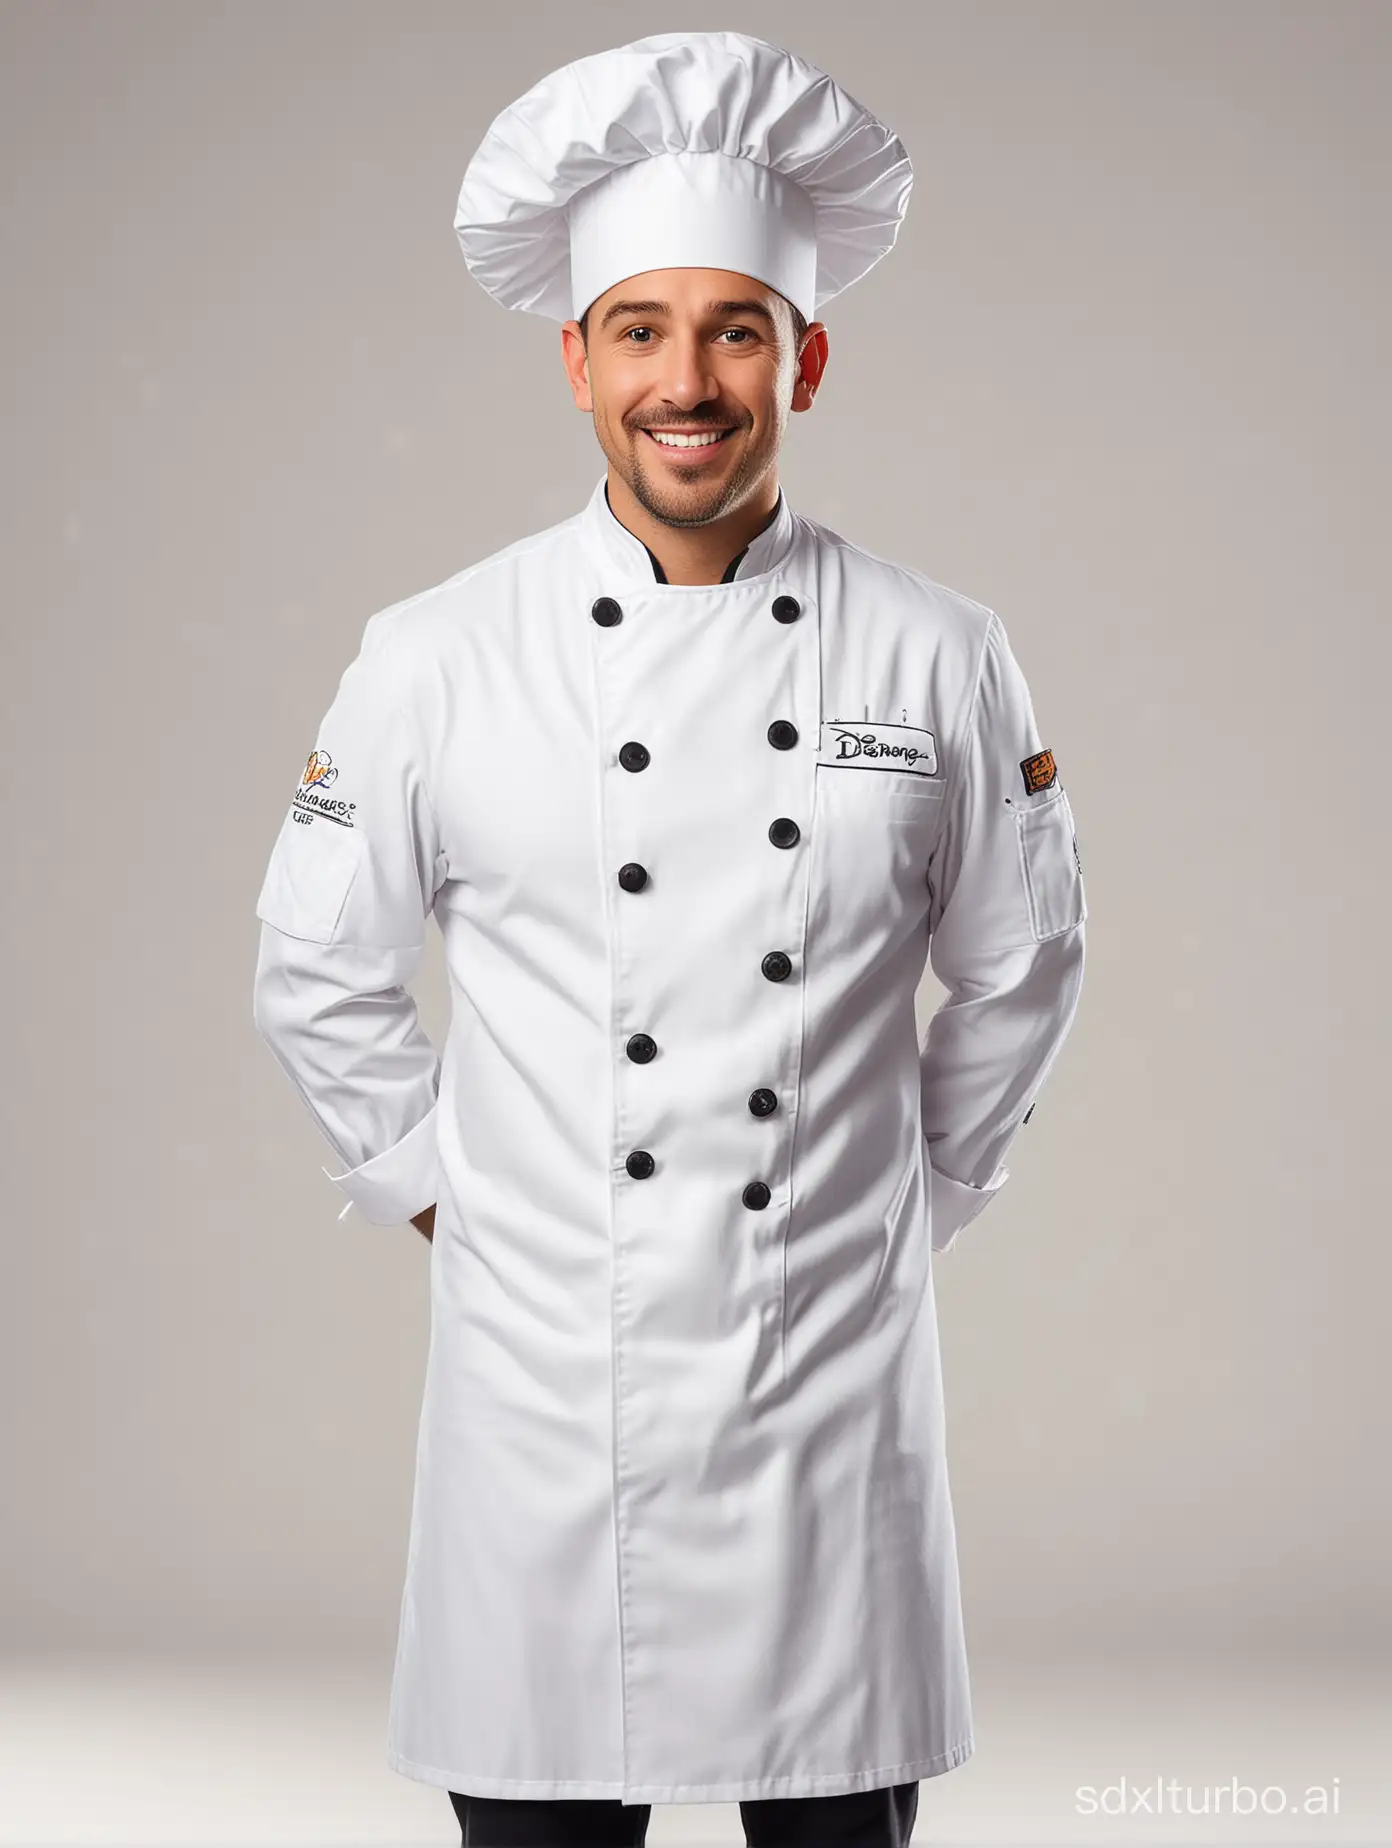 一位以迪士尼风格呈现的厨师，身着专业的厨师服，站在明亮的白色背景前。他的外表栩栩如生，展现出迪士尼式的卡通形象。厨师身穿整洁的厨师服，带着一顶标志性的厨师帽